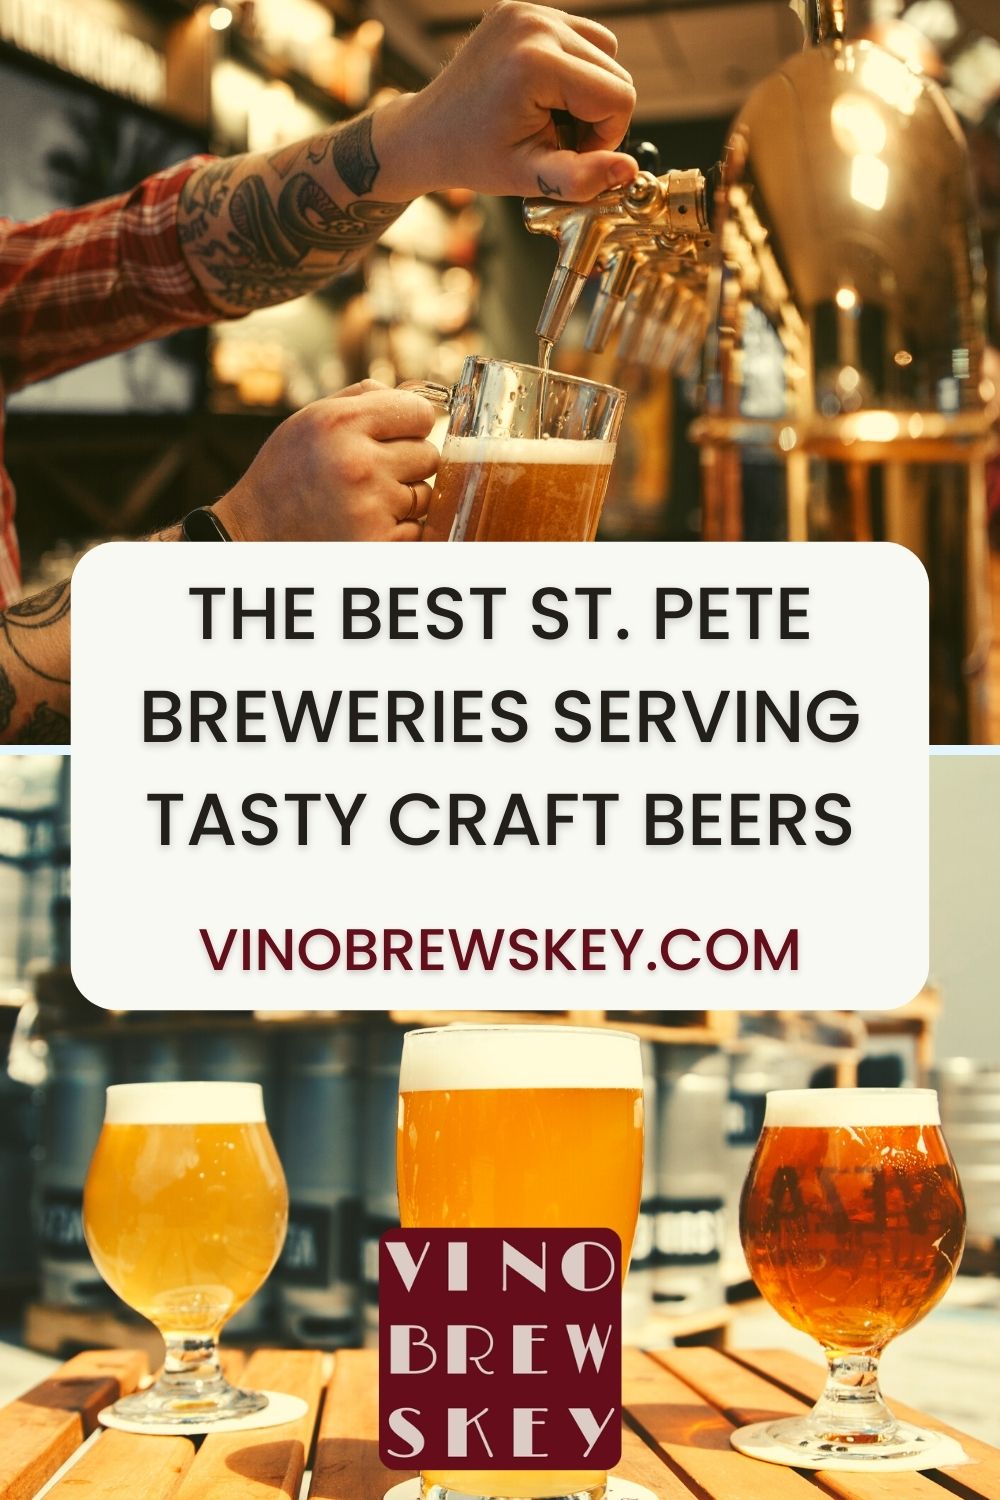 The Best St. Pete Breweries Serving Craft Beers - VinoBrewskey